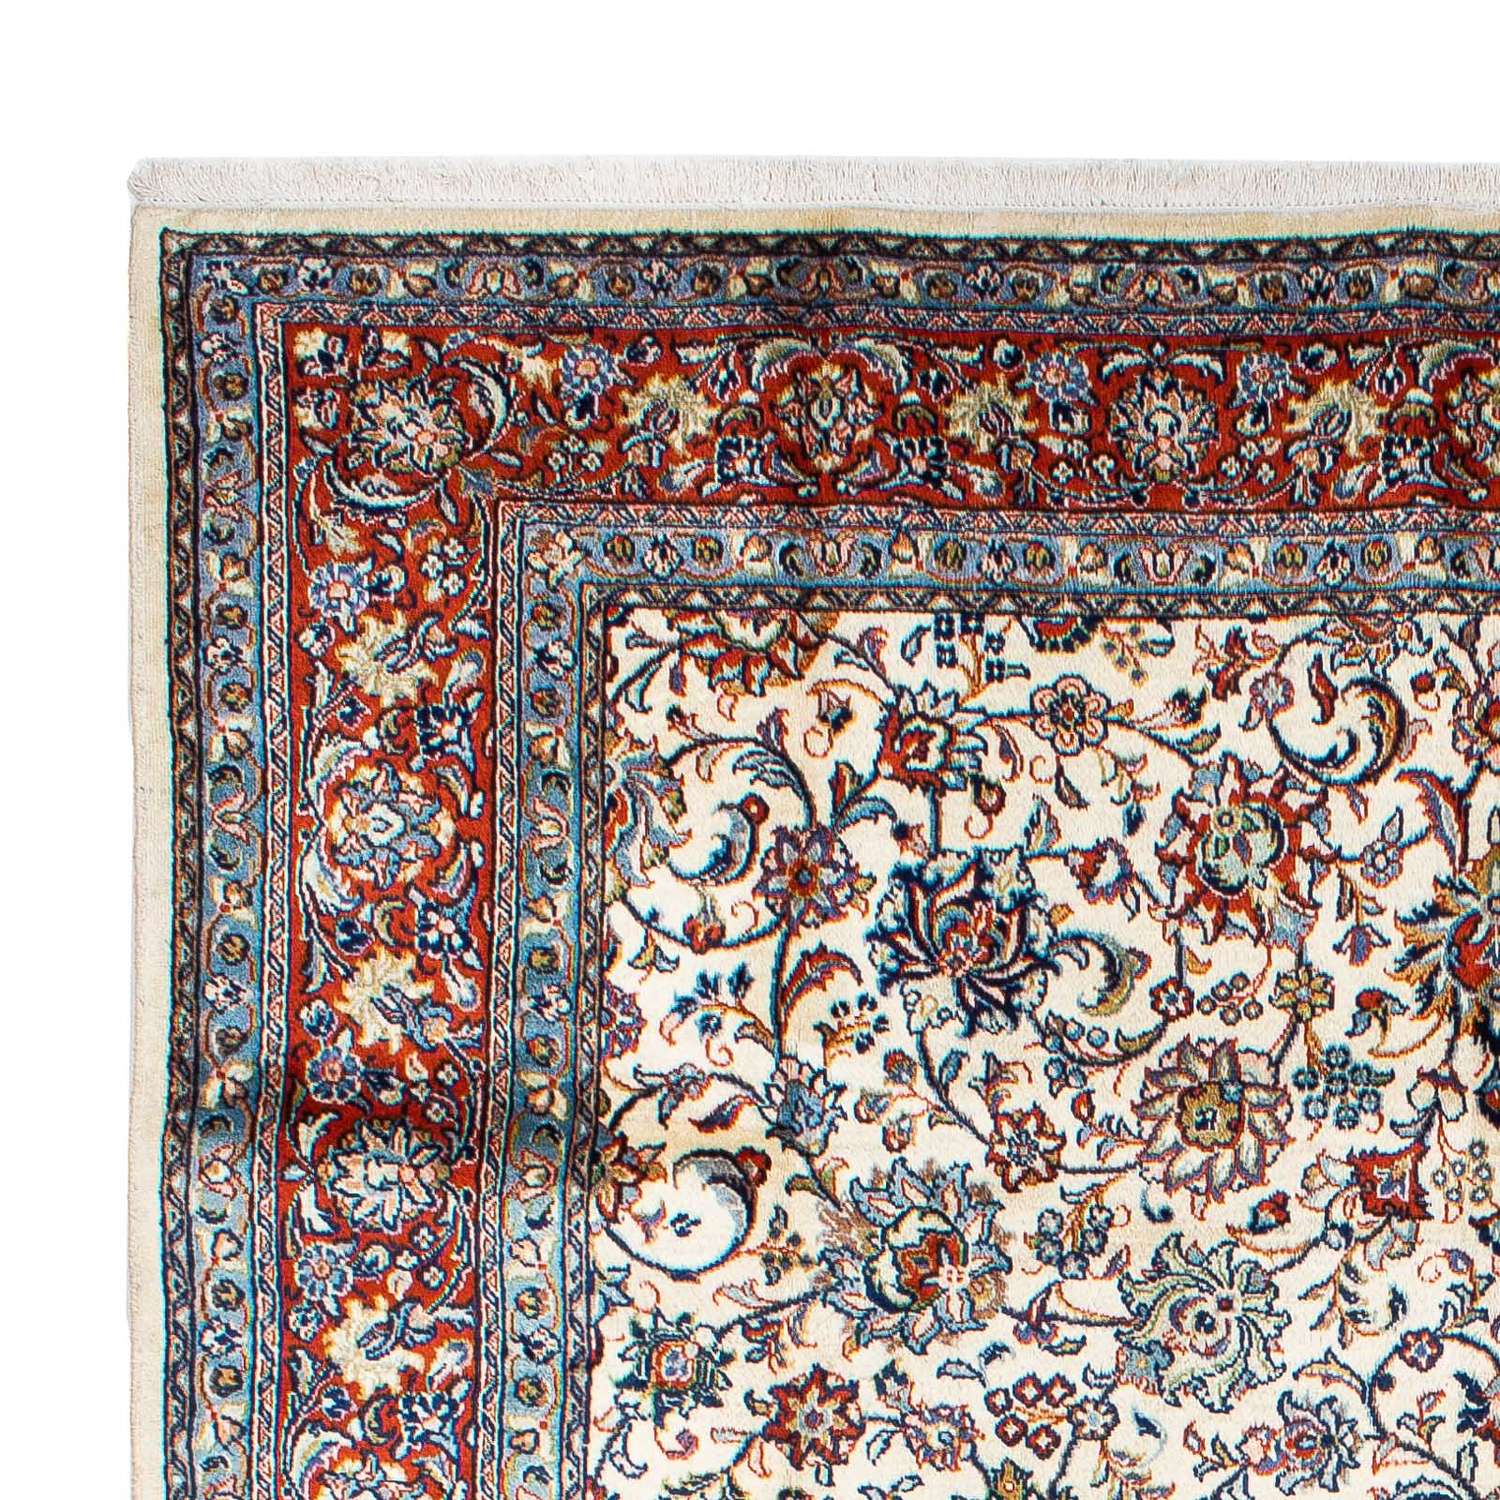 Persisk teppe - klassisk - 310 x 207 cm - beige